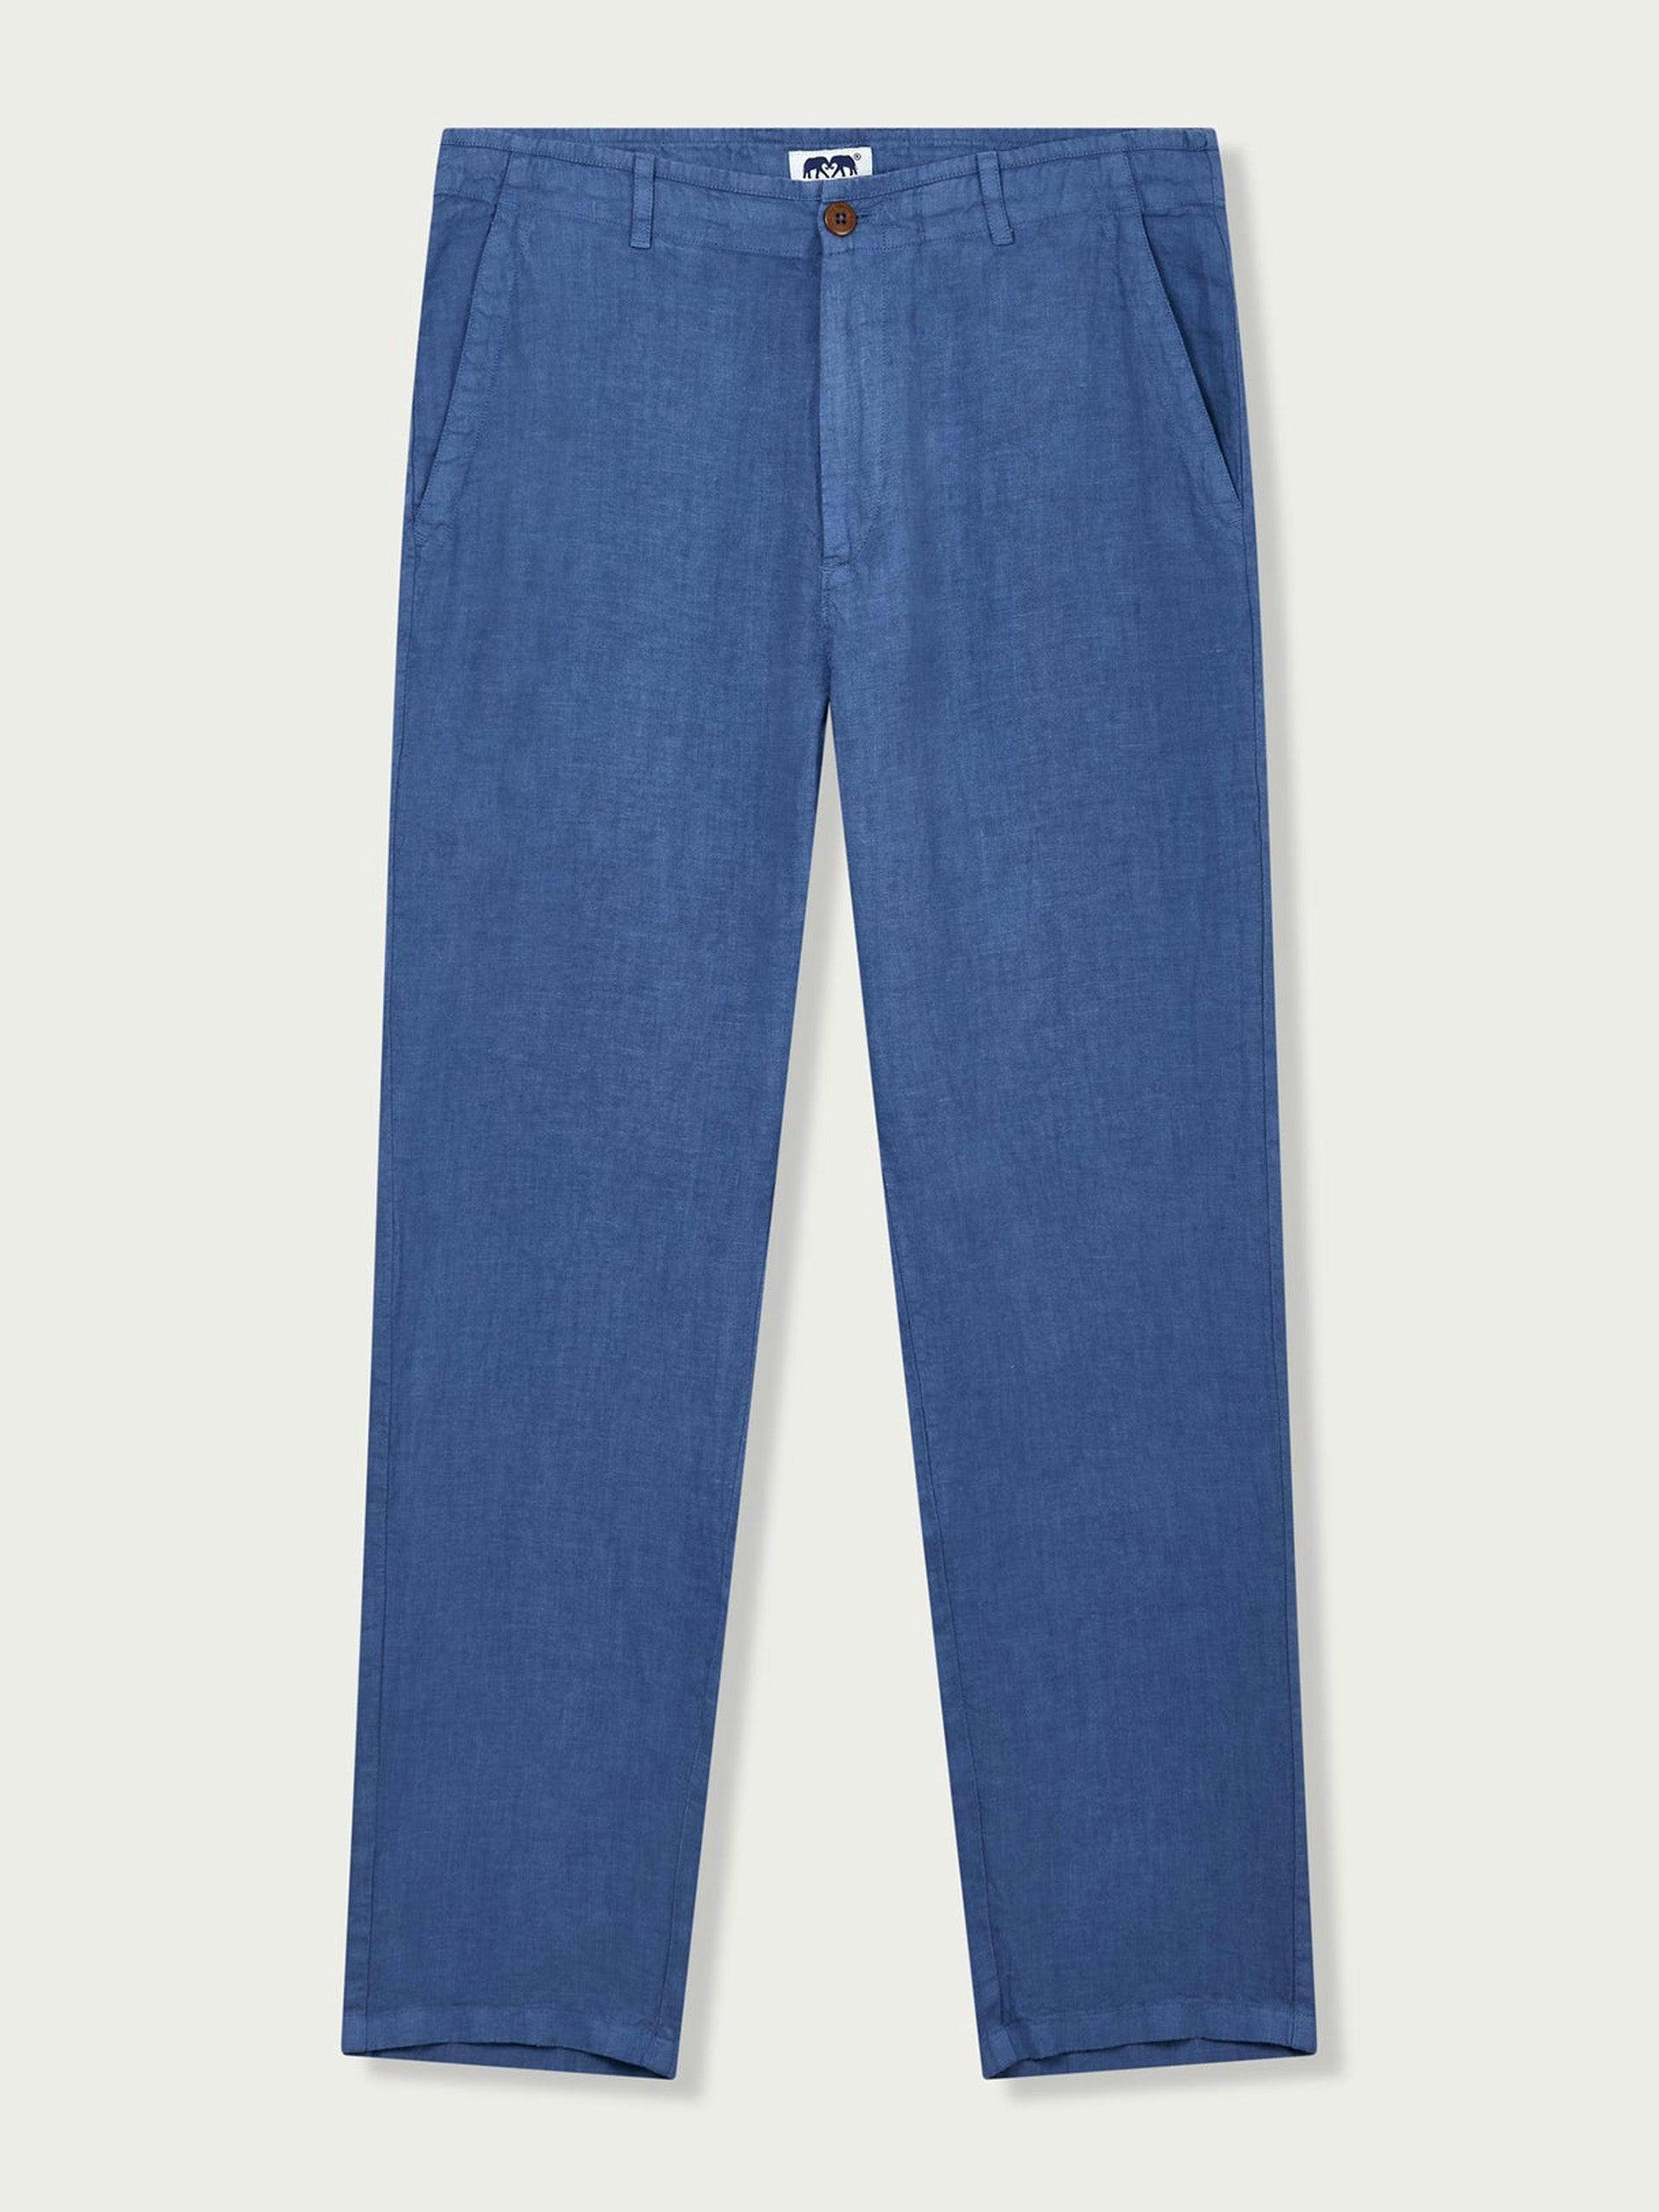 Blue linen trousers